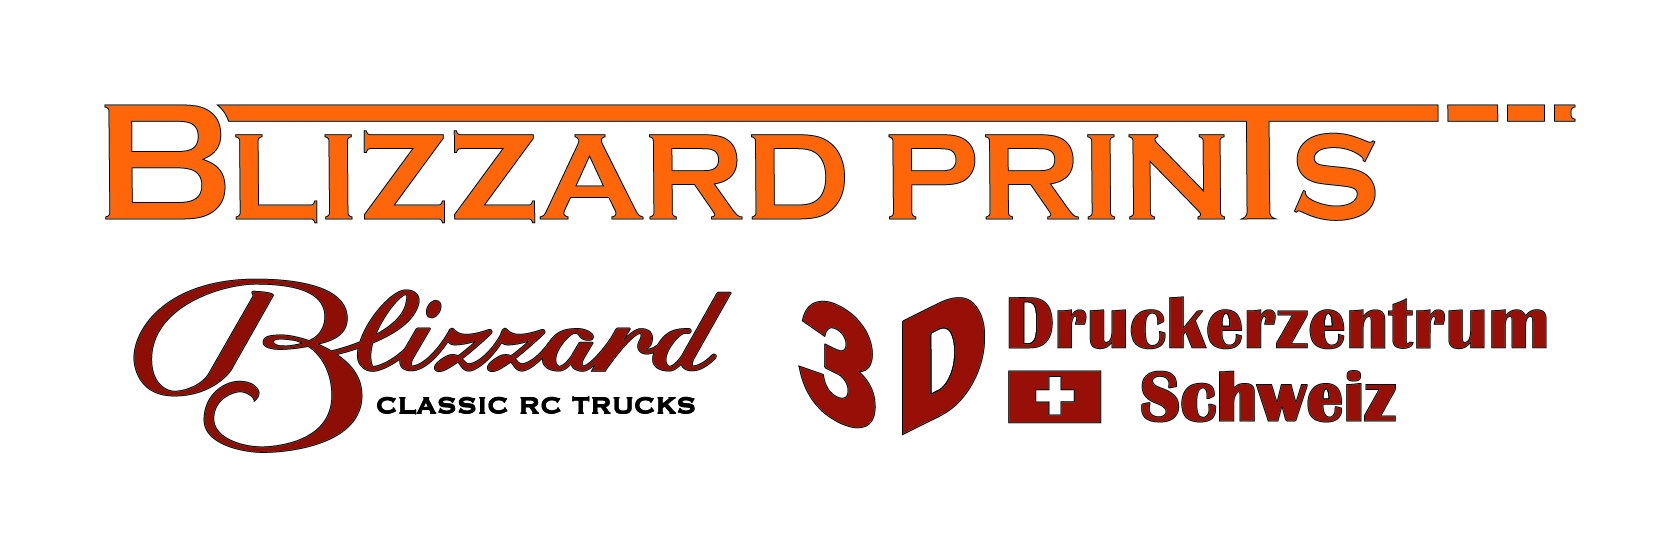 Blizzard-Prints GmbH